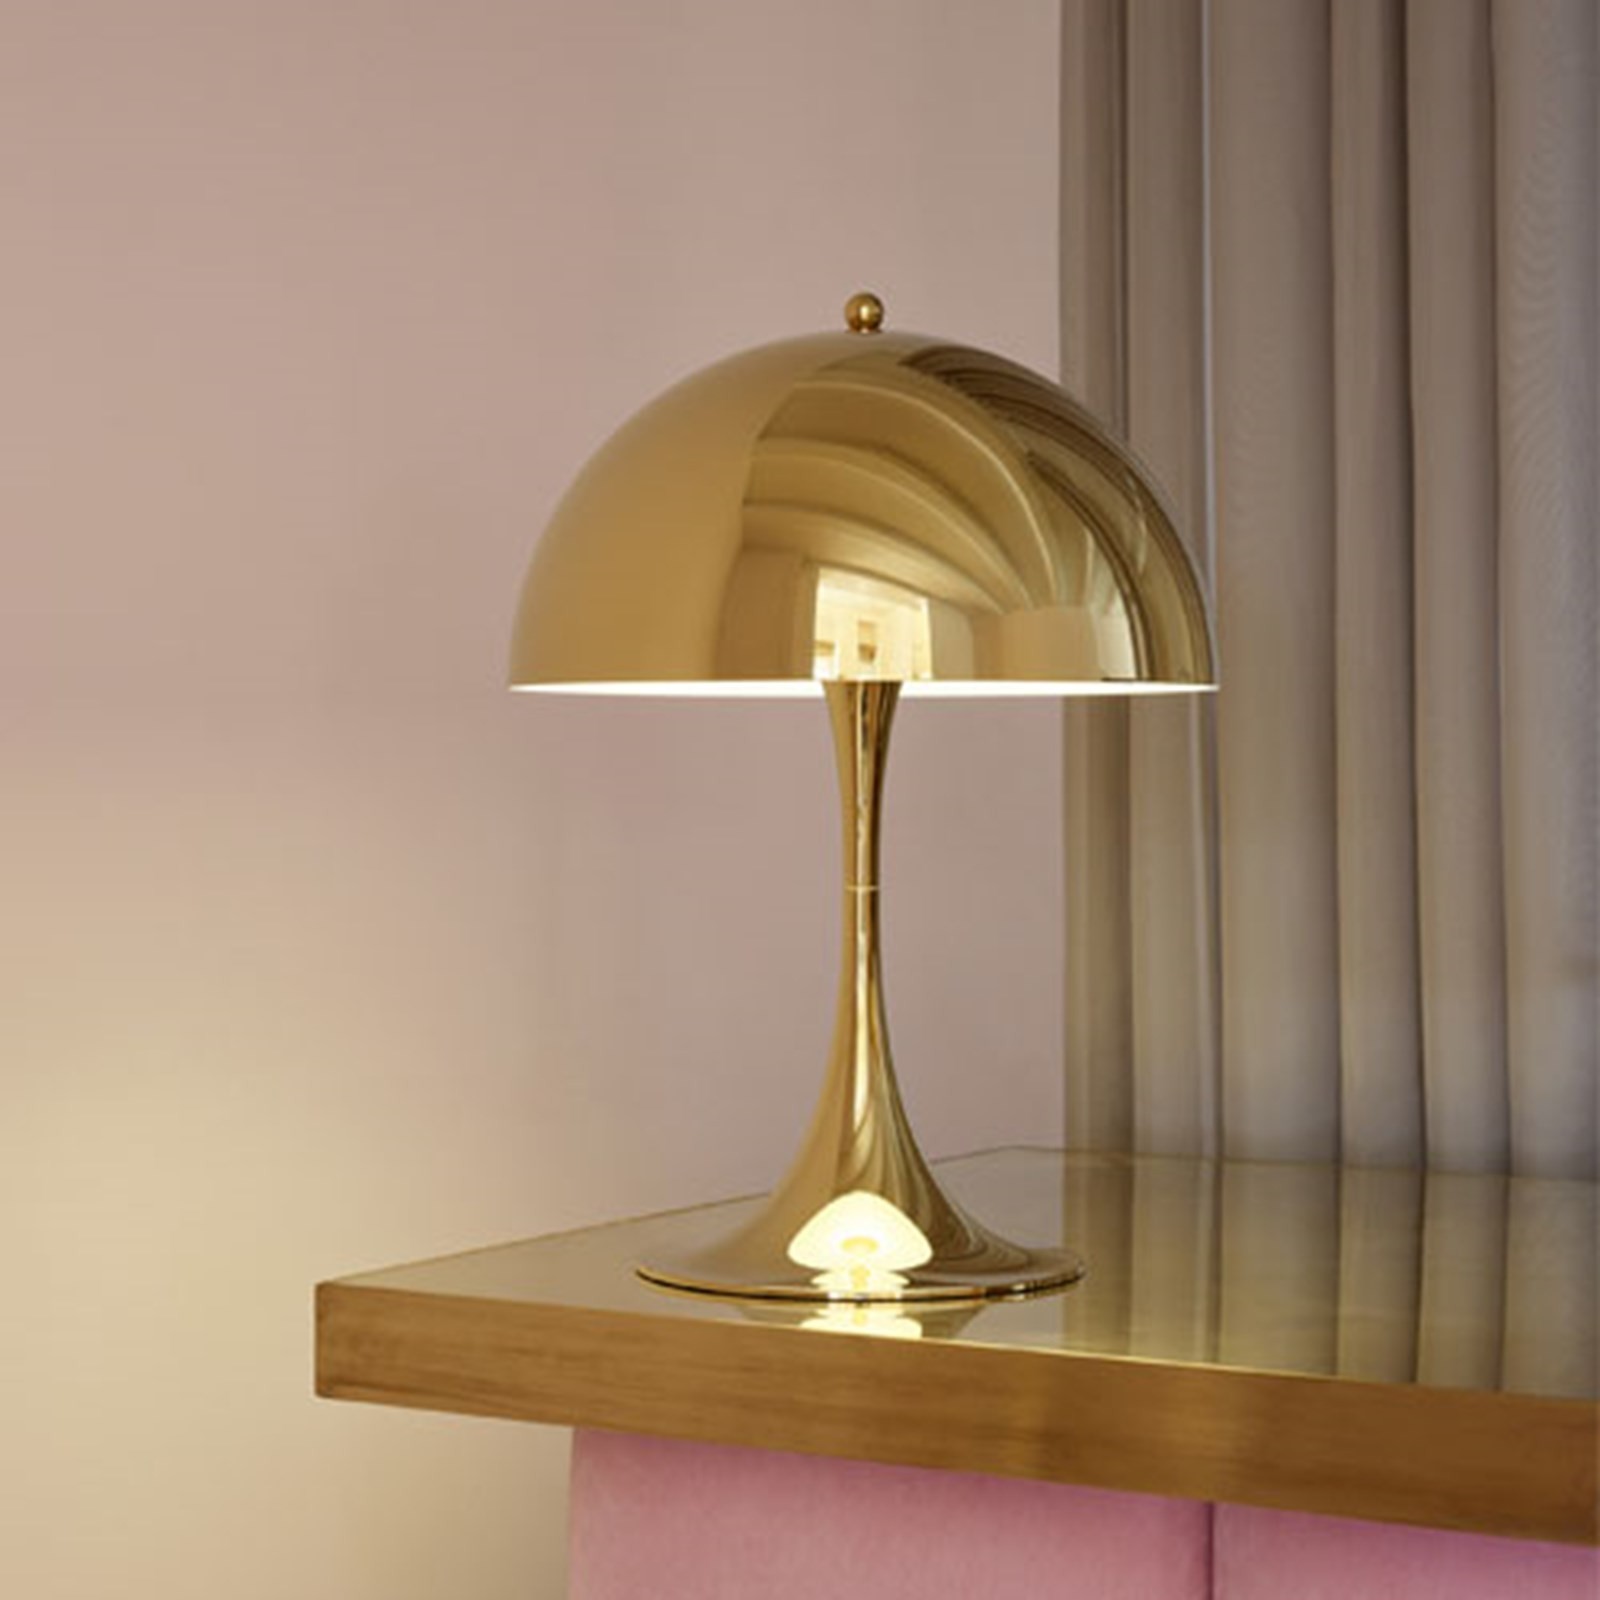 Panthella Midi 320 Table Lamp , Opal grey, Louis Poulsen